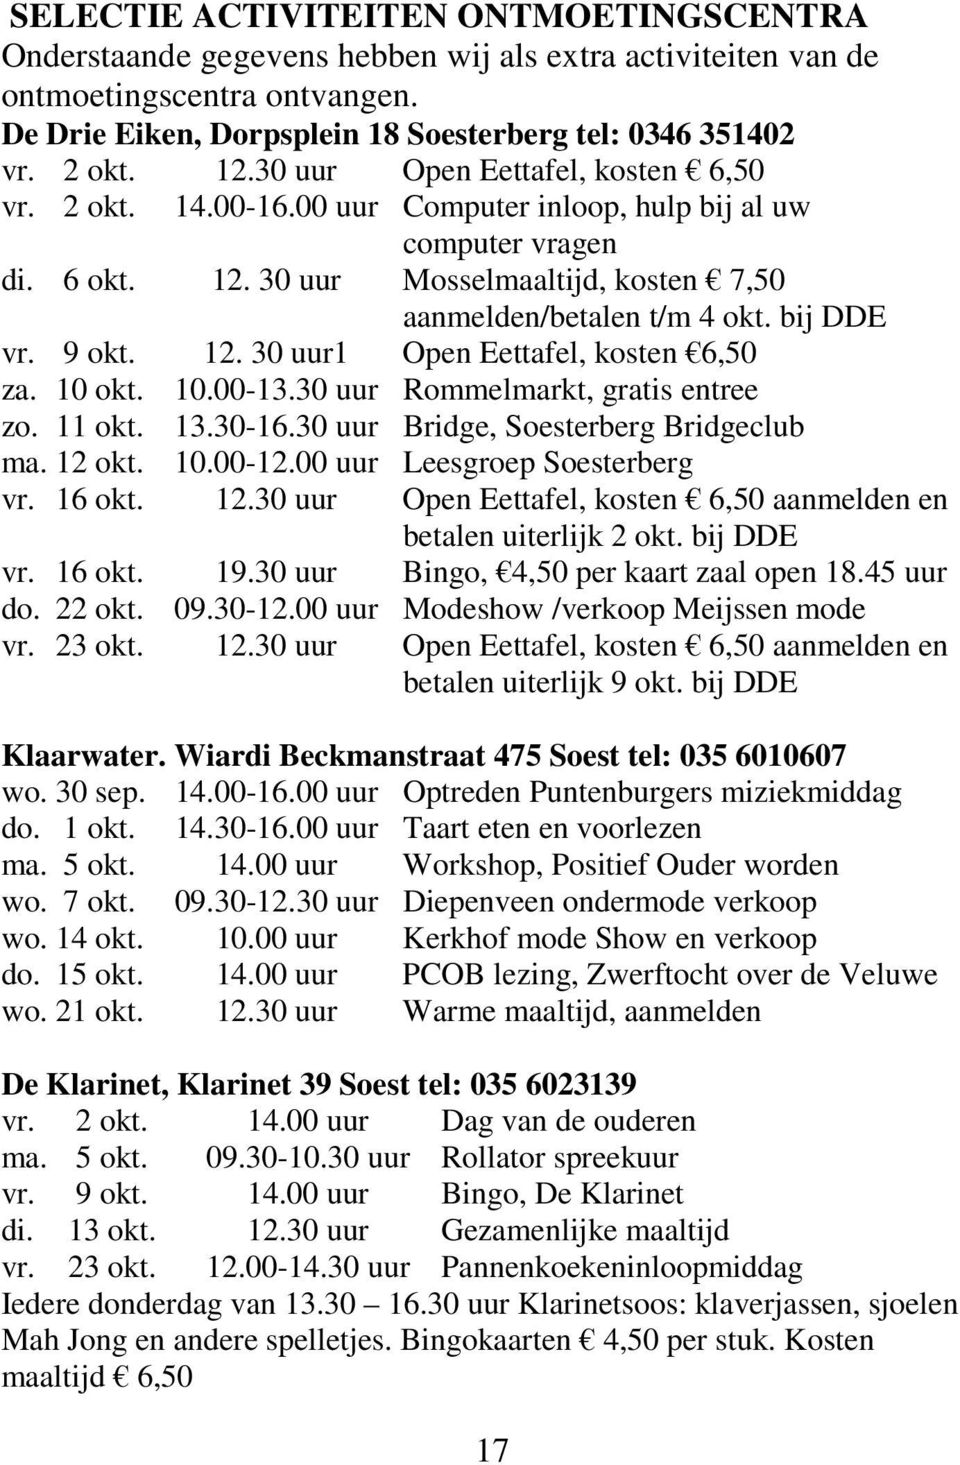 bij DDE vr. 9 okt. 12. 30 uur1 Open Eettafel, kosten 6,50 za. 10 okt. 10.00-13.30 uur Rommelmarkt, gratis entree zo. 11 okt. 13.30-16.30 uur Bridge, Soesterberg Bridgeclub ma. 12 okt. 10.00-12.